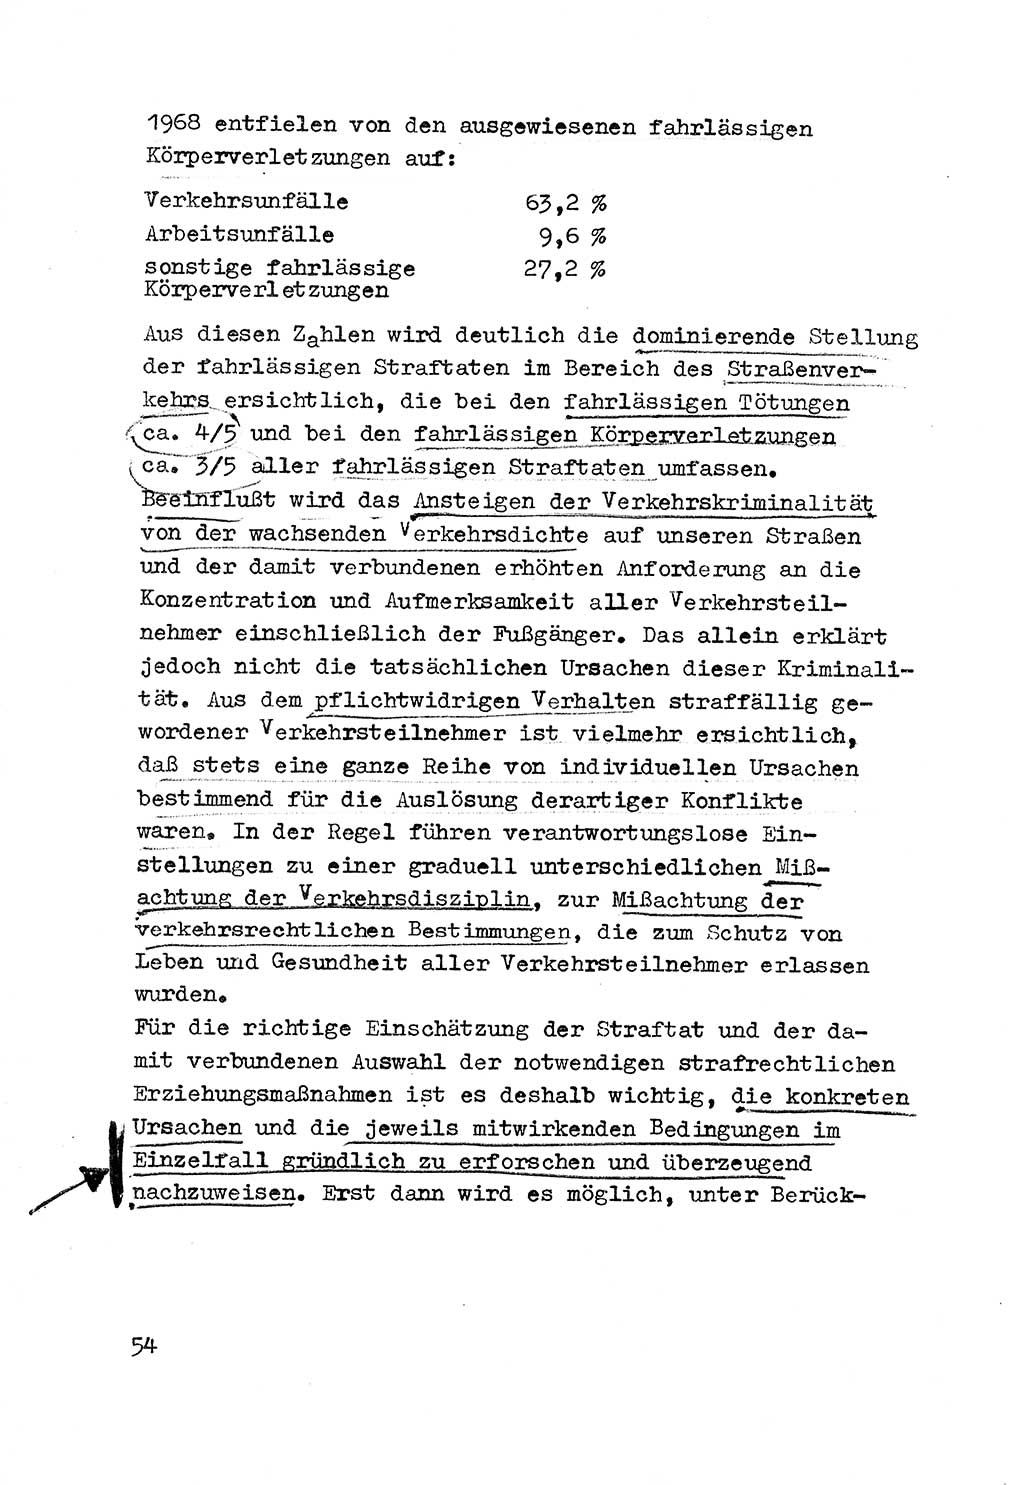 Strafrecht der DDR (Deutsche Demokratische Republik), Besonderer Teil, Lehrmaterial, Heft 3 1969, Seite 54 (Strafr. DDR BT Lehrmat. H. 3 1969, S. 54)